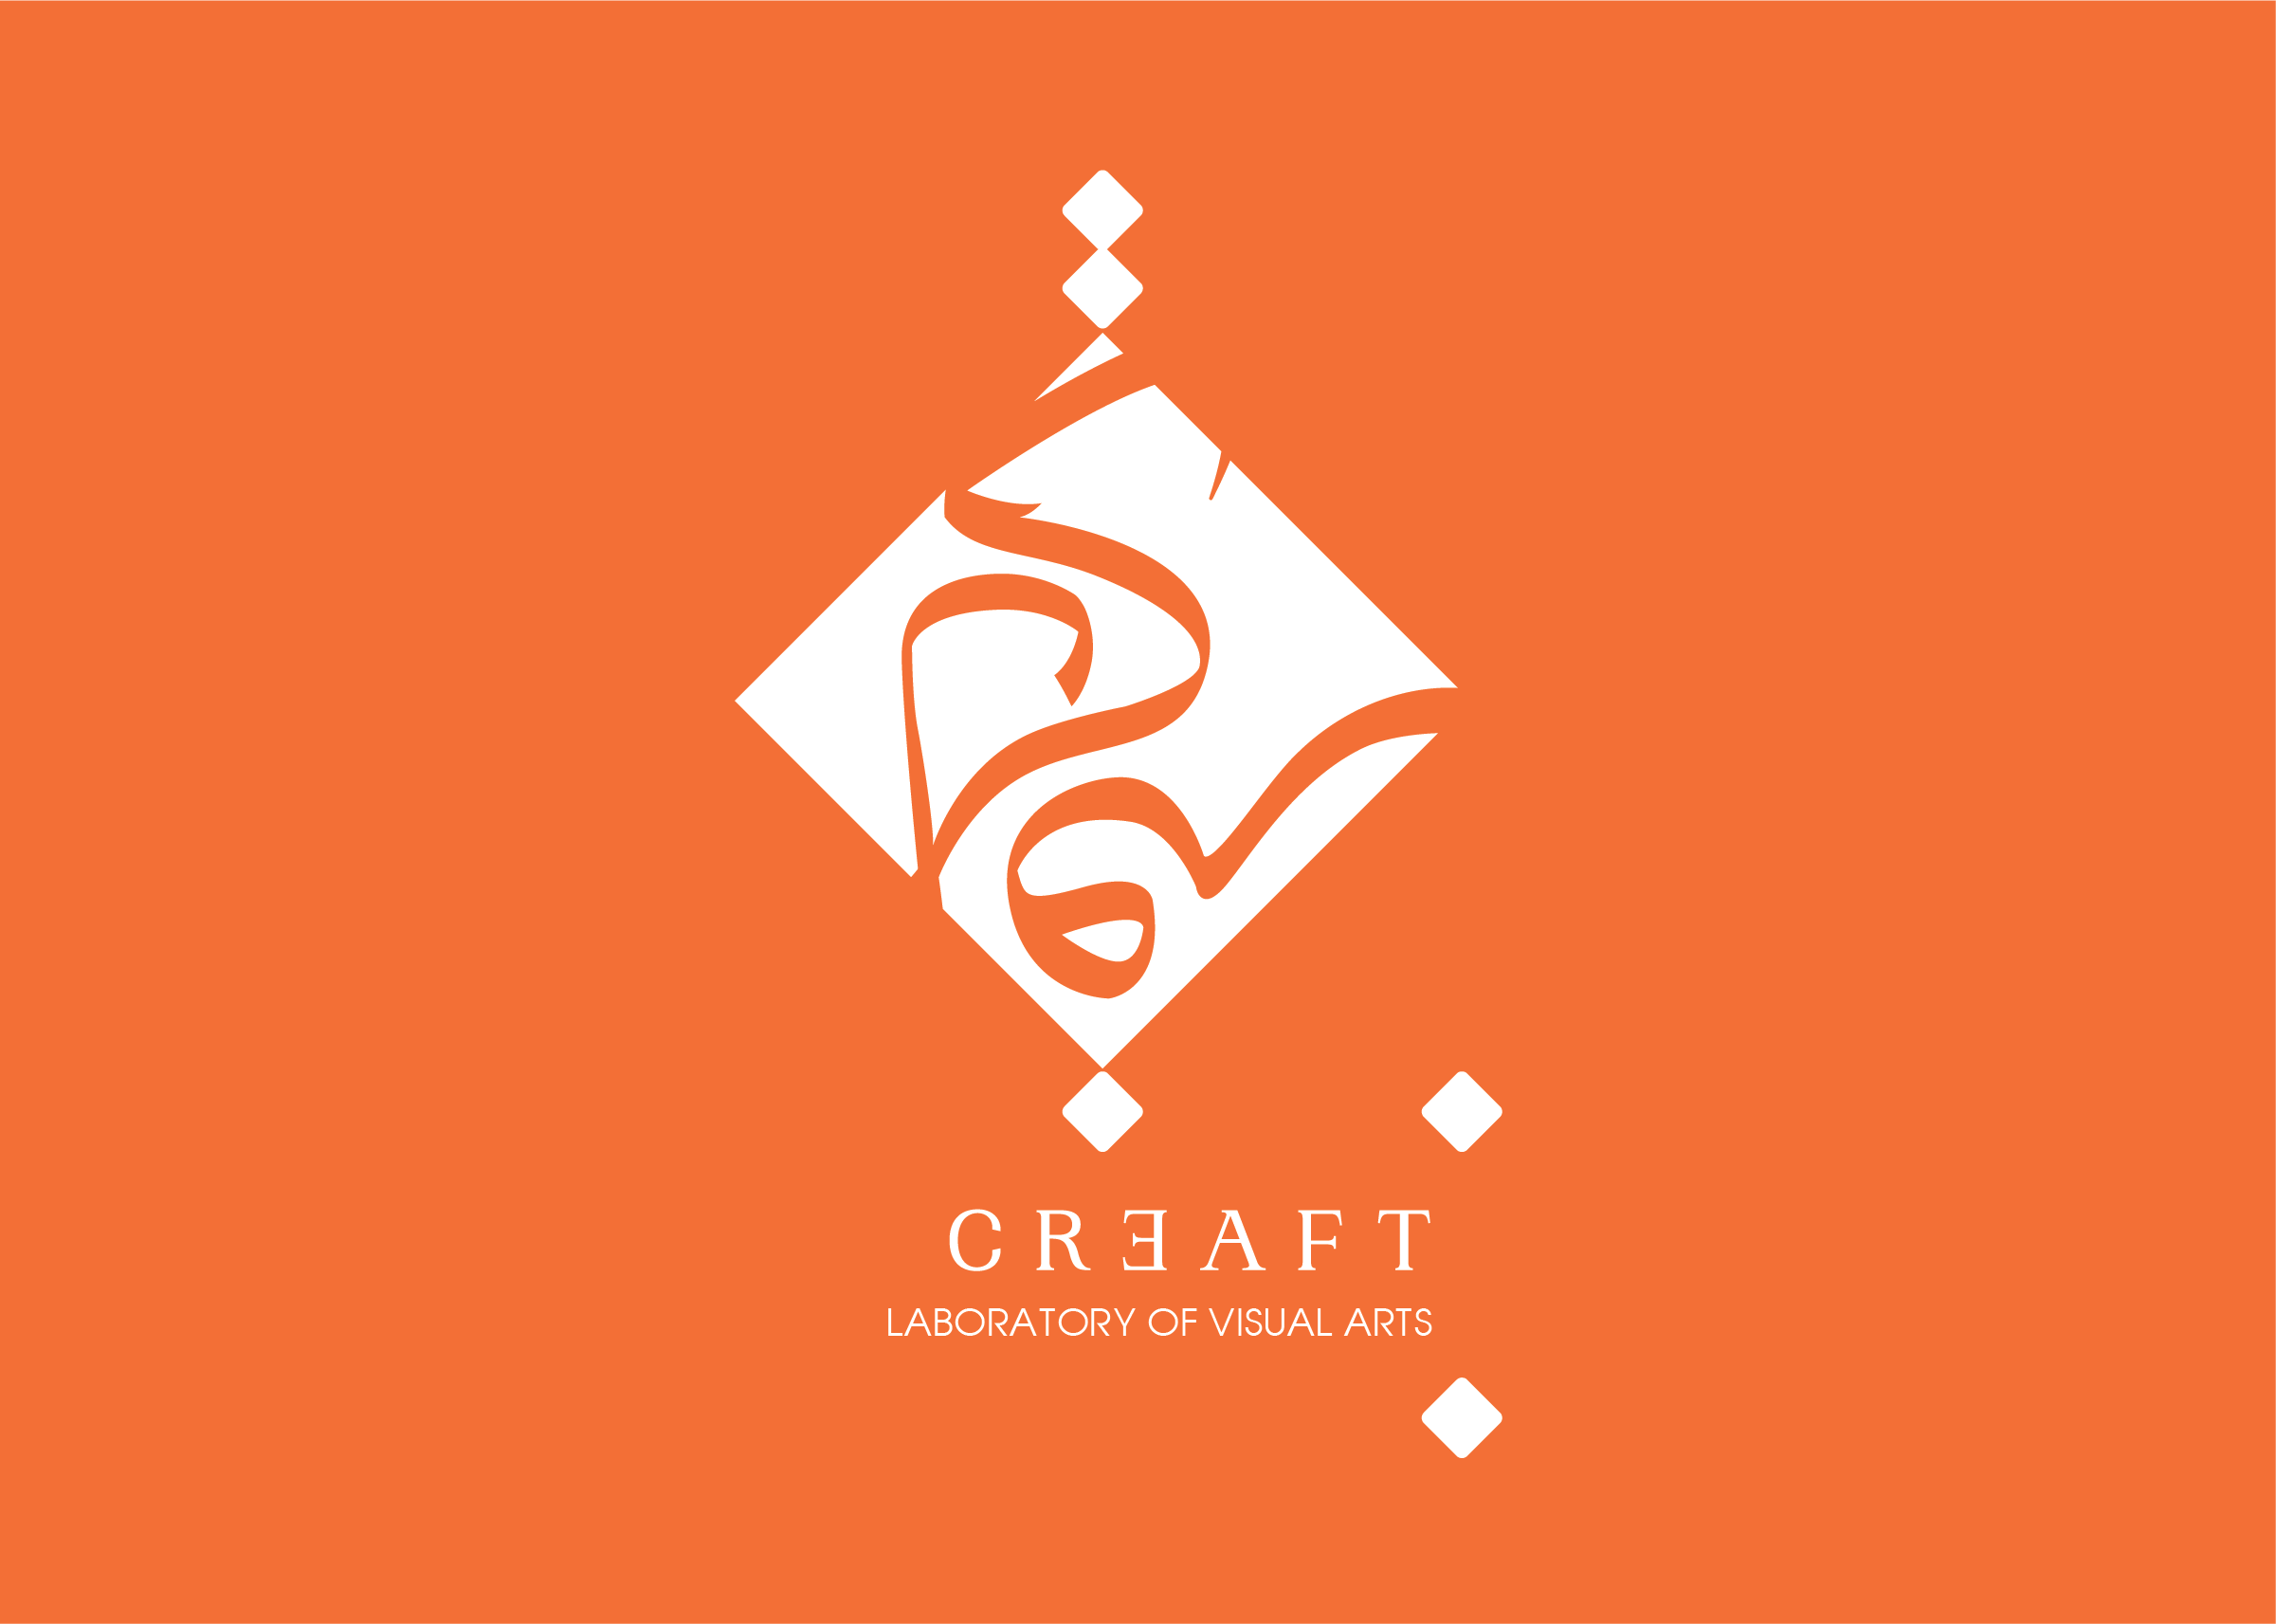 Création de logotype creaft